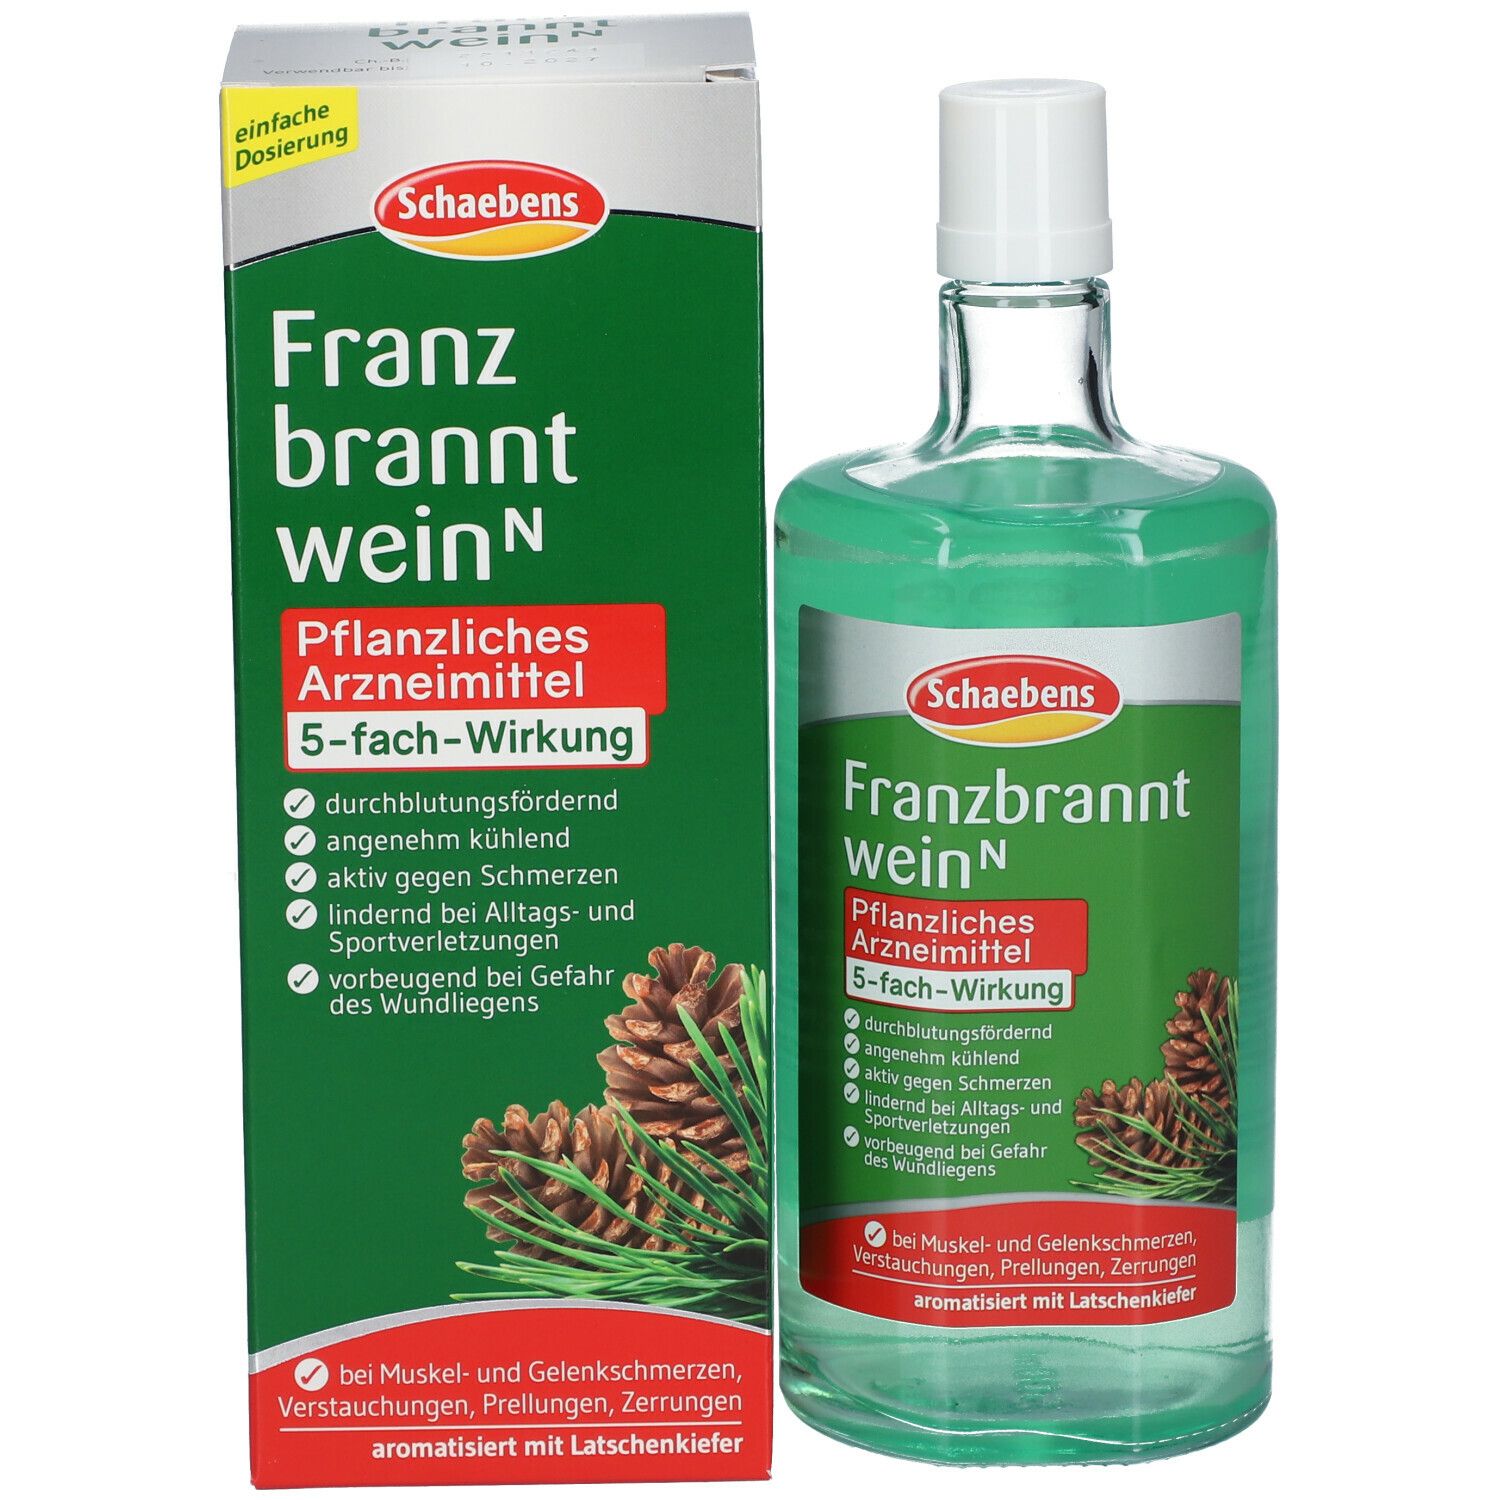 Franzbranntwein N